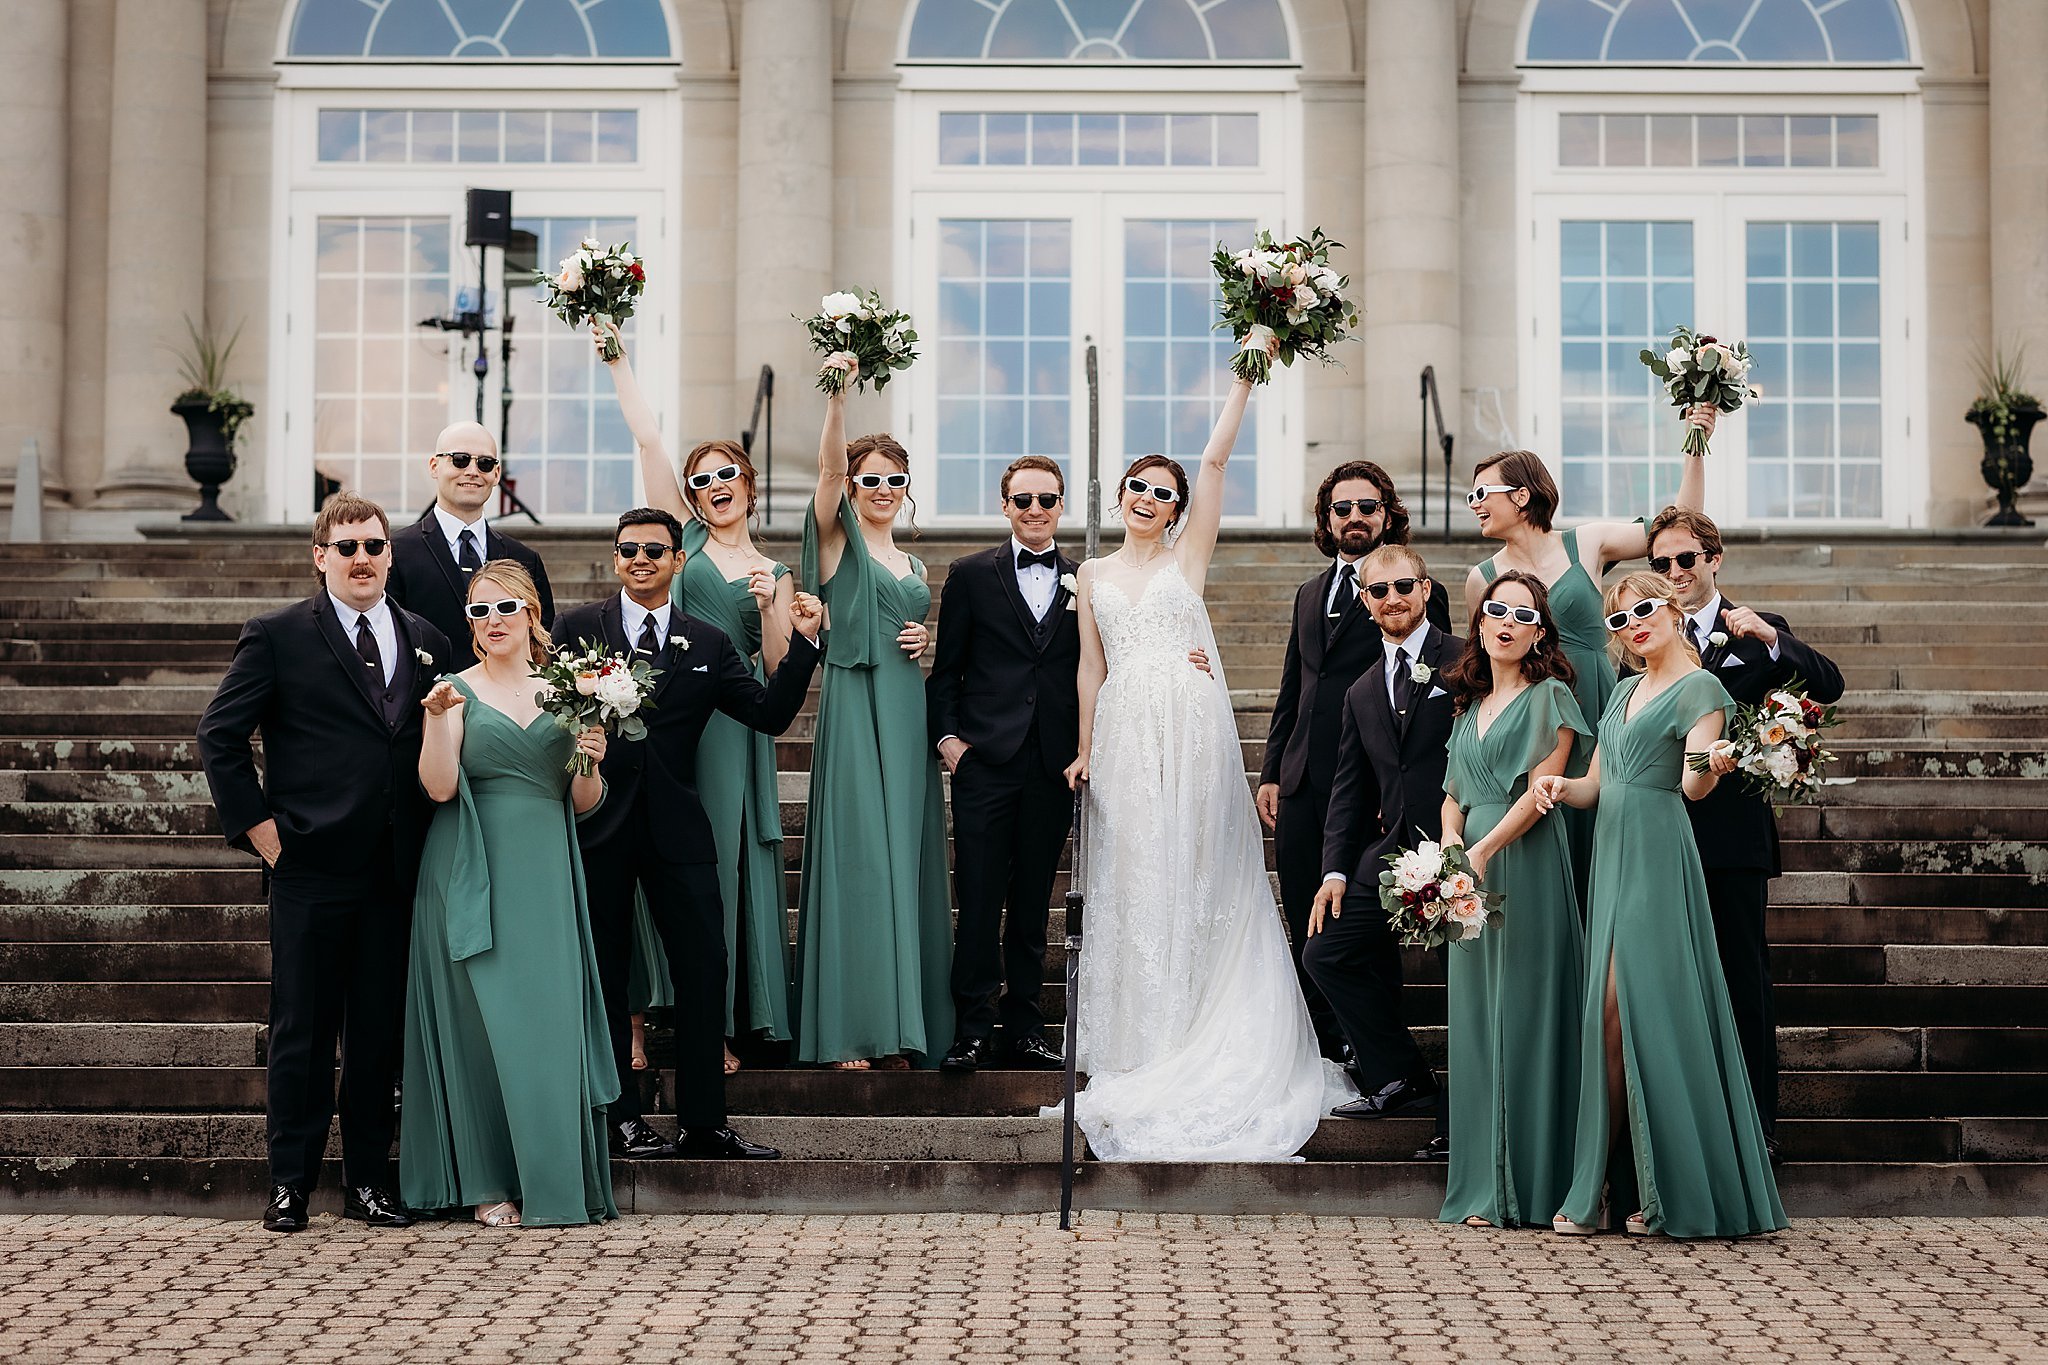 Aldrich+Mansion+Wedding+by+Dori+Fitzpatrick+Photography_0053.jpg